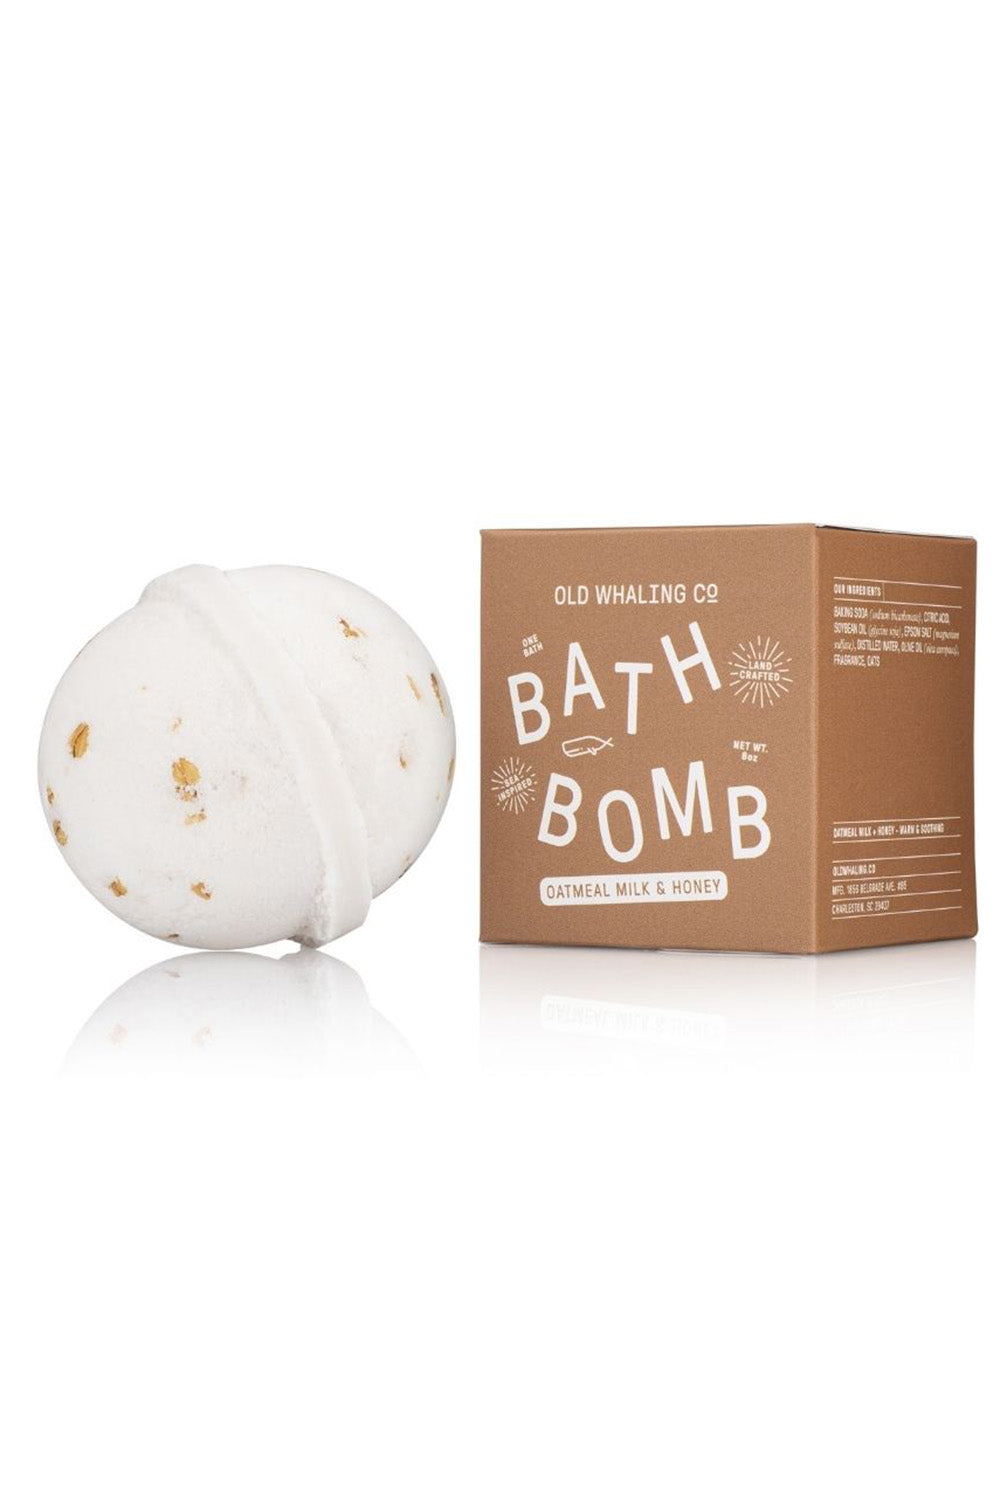 Boxed Bath Bomb - Oatmeal Milk Honey